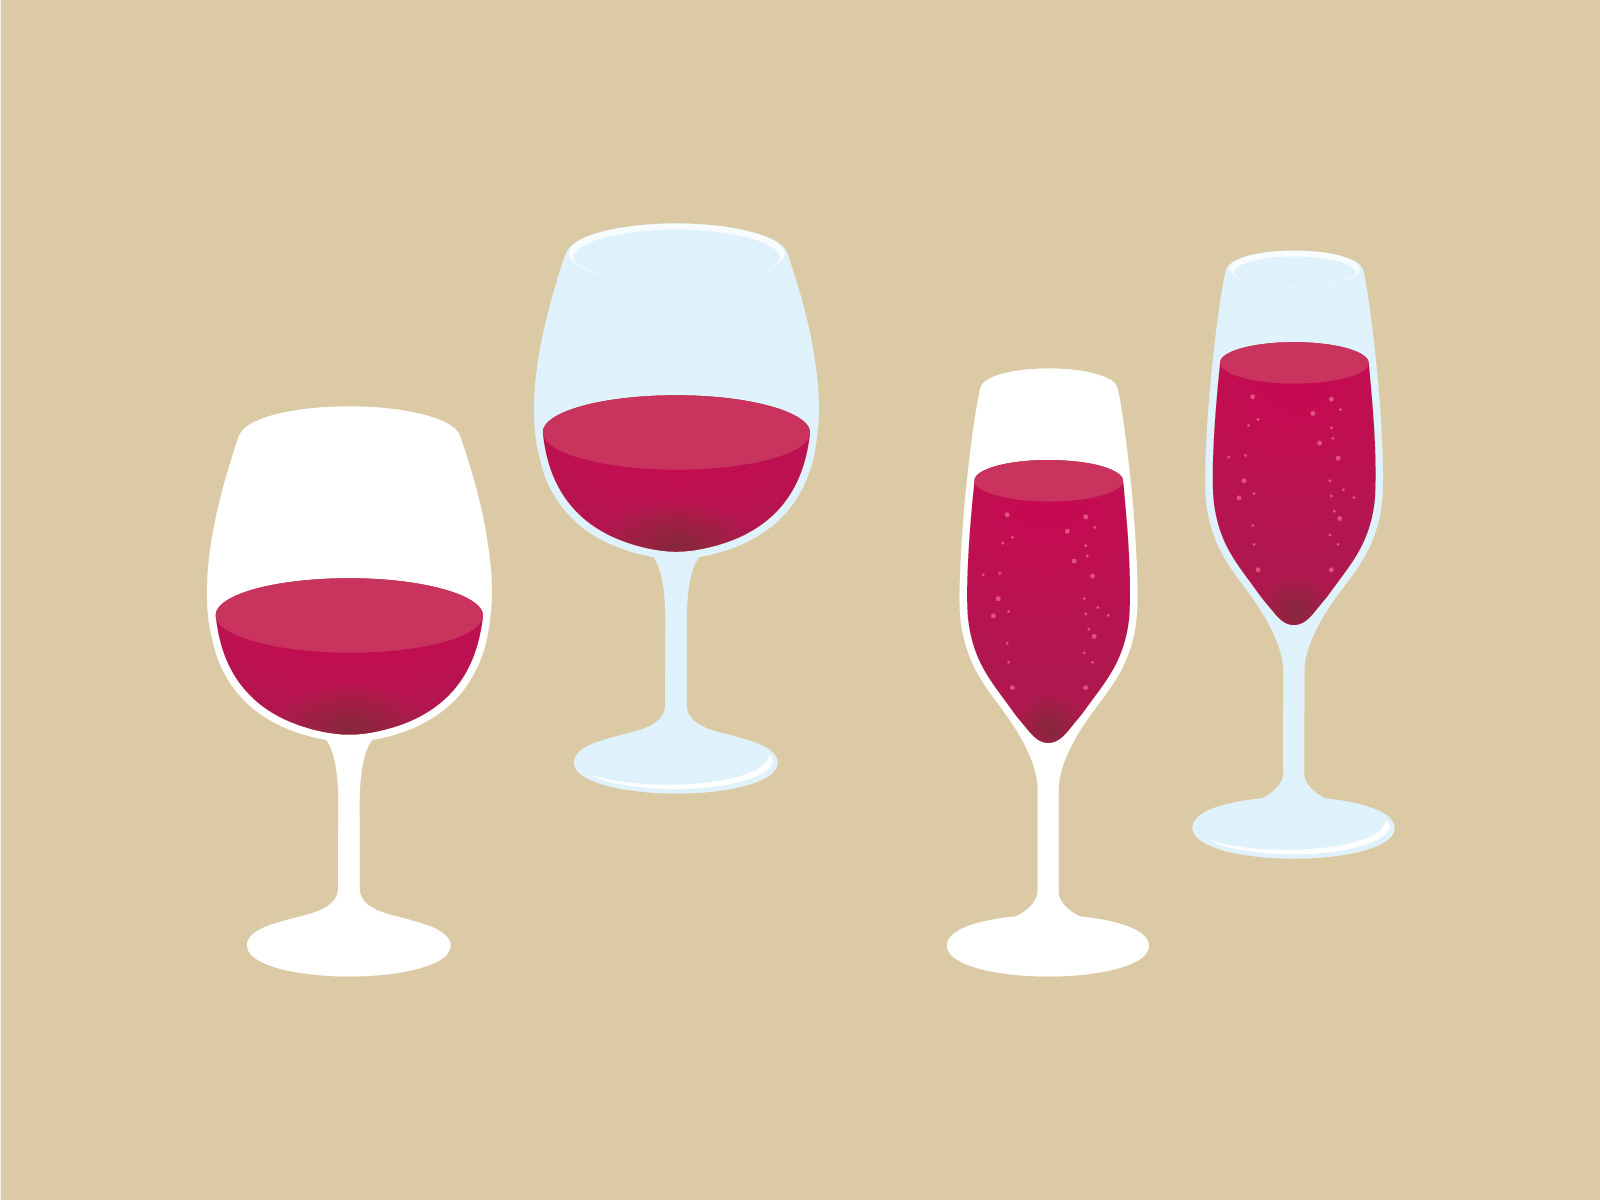 壁紙についた赤ワインのシミの落とし方 簡単 おすすめの染み抜き方法を紹介